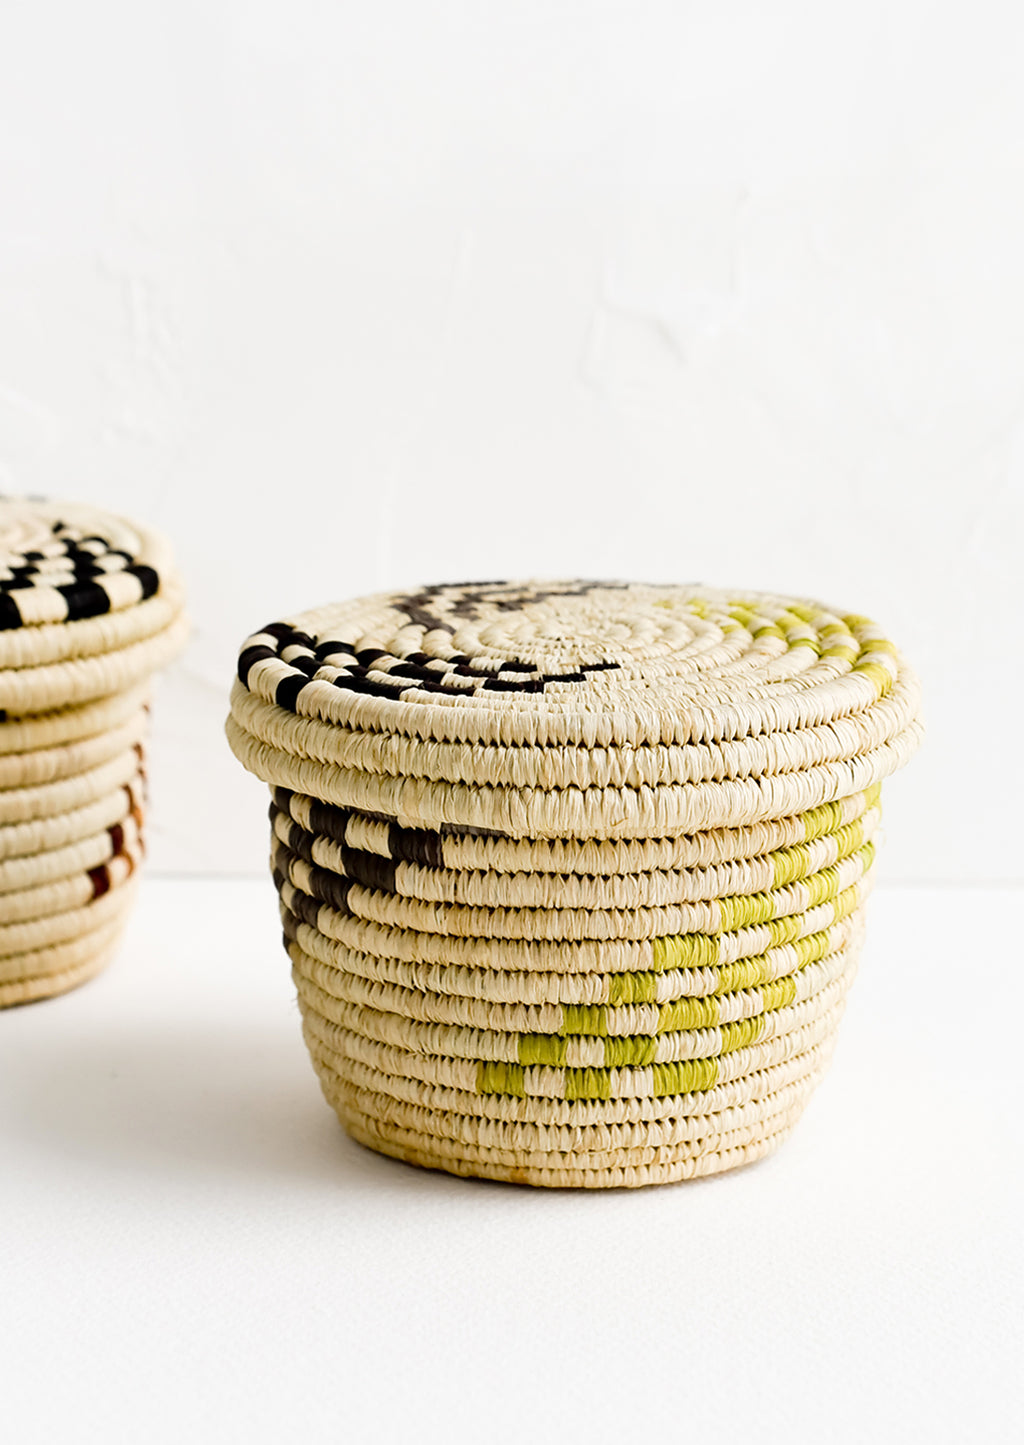 2: Small raffia baskets in woven checker print.